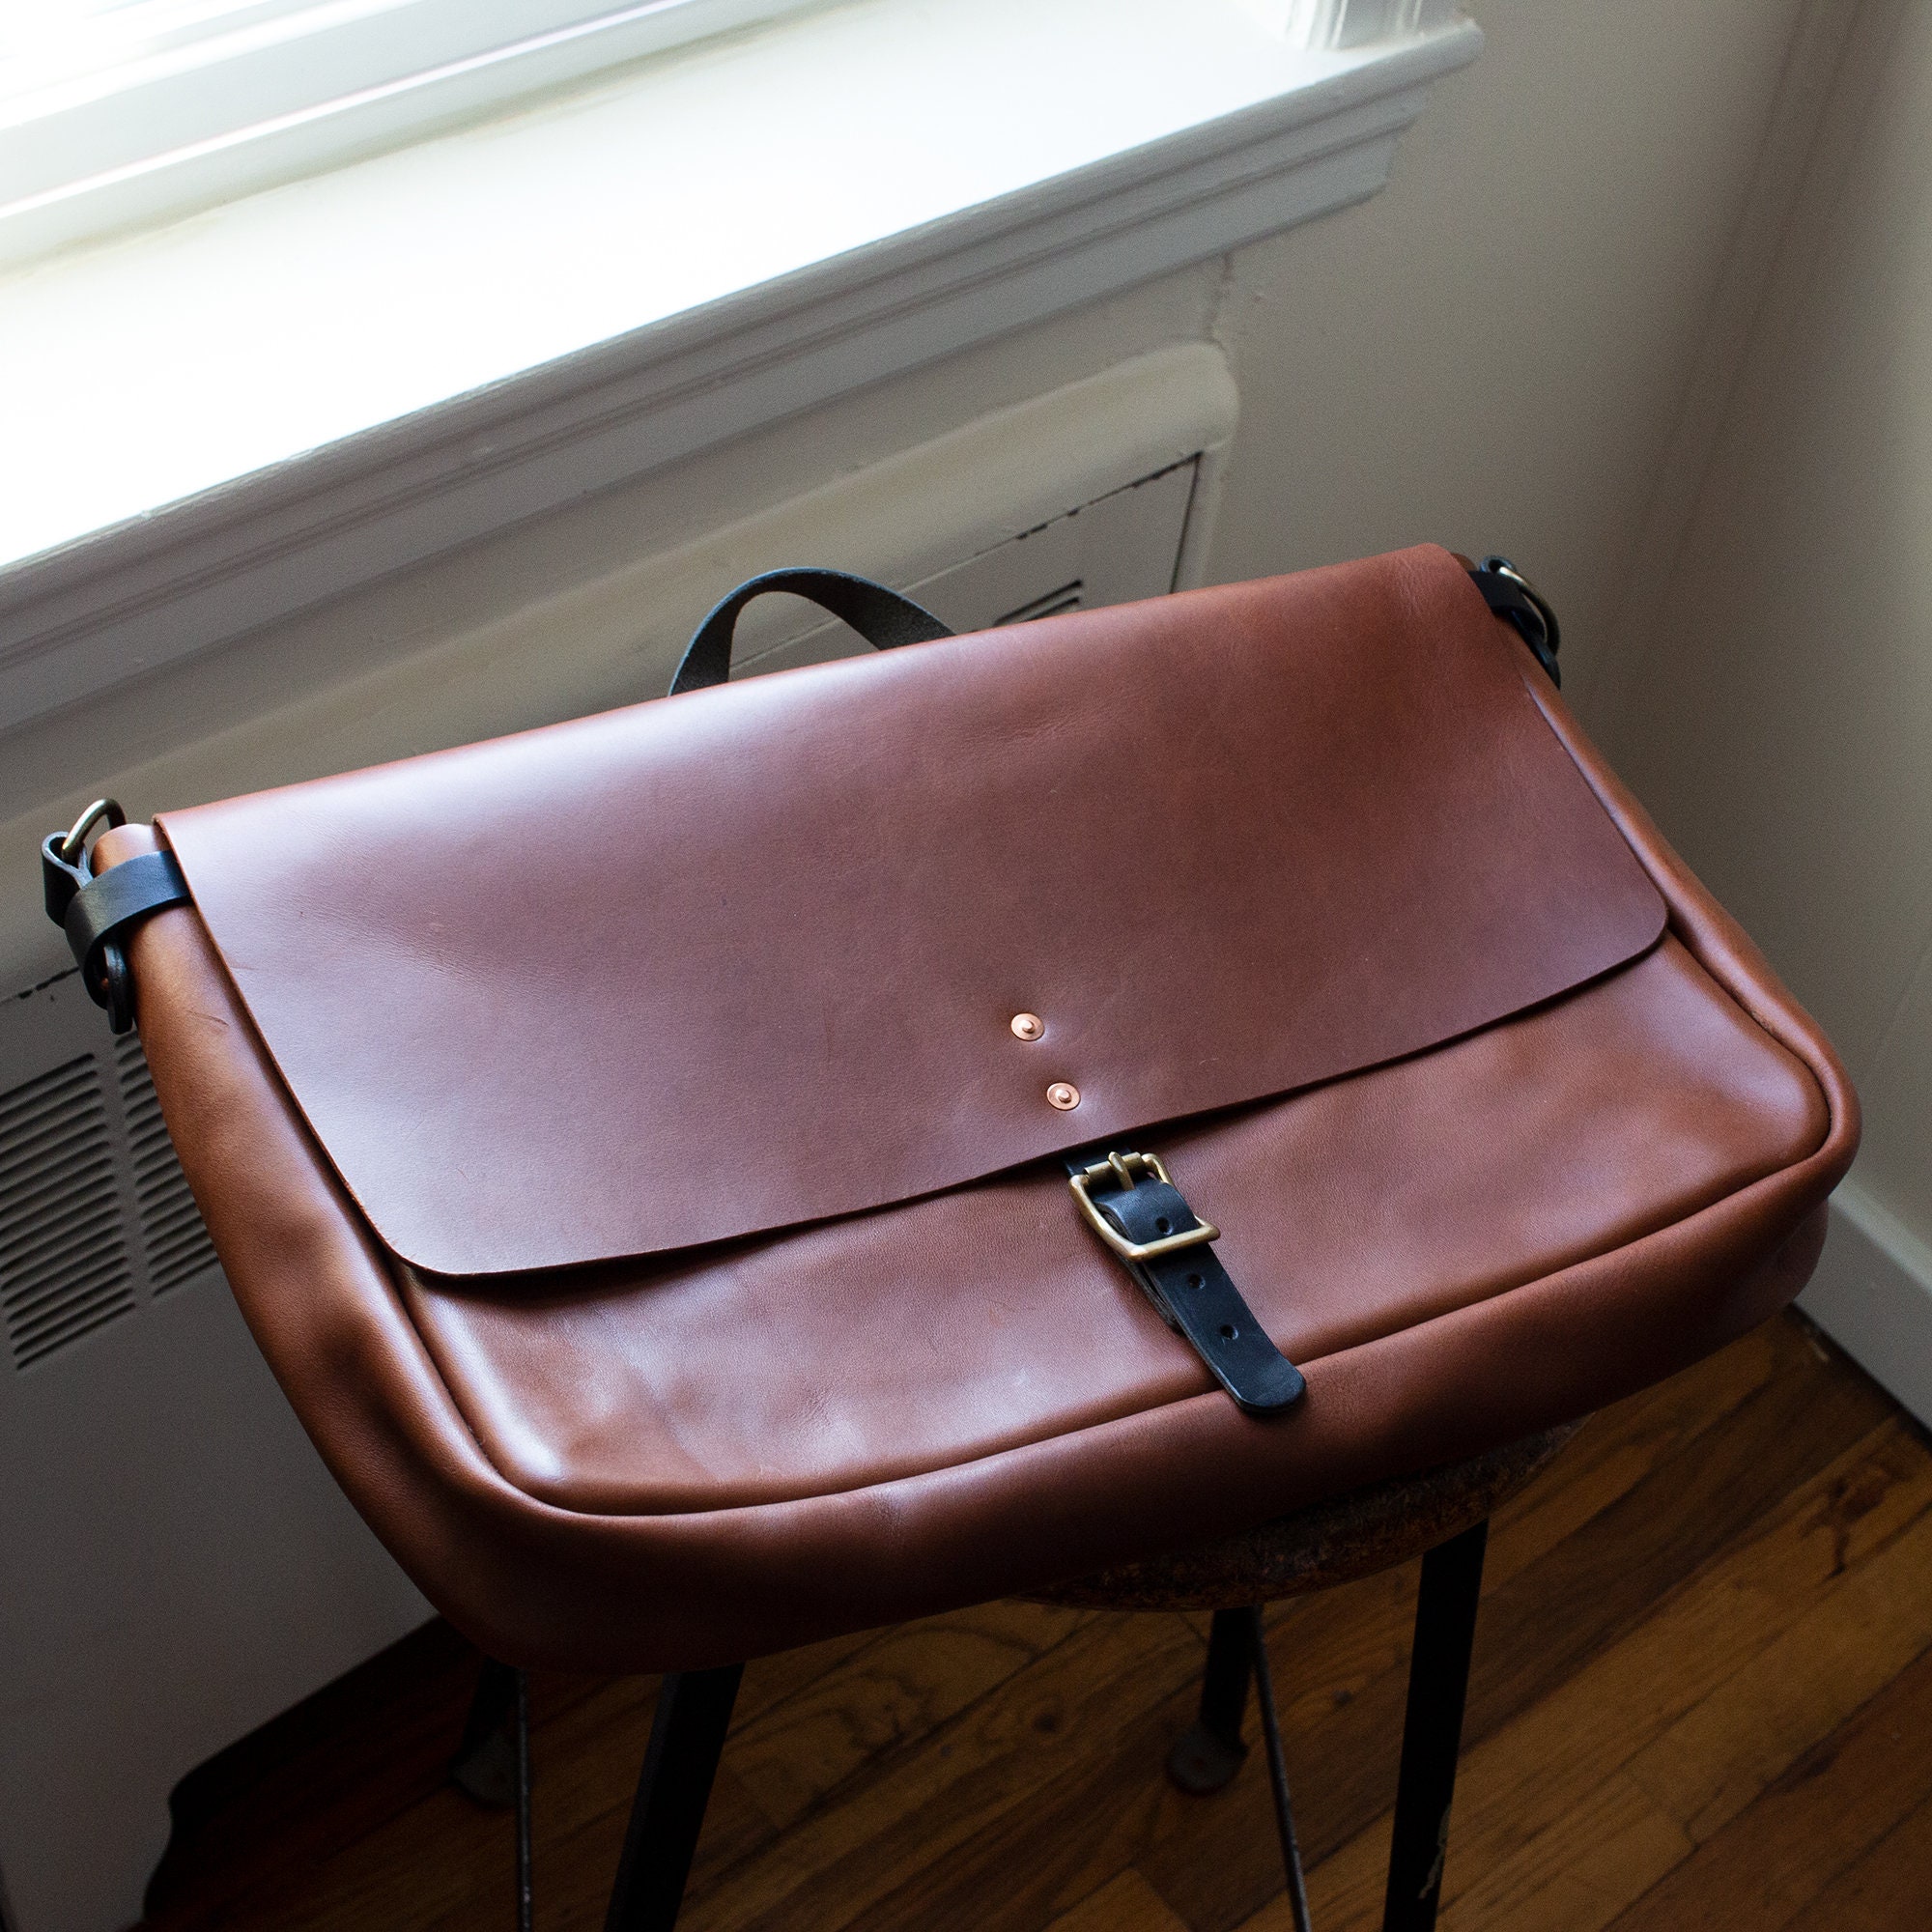 Niuer Mens Vintage Leather Crossbody Bag Satchel Waterproof Briefcase Handbag Casual Utility Work Shoulder Messenger Bag, Black/Brown, Men's, Size: 11